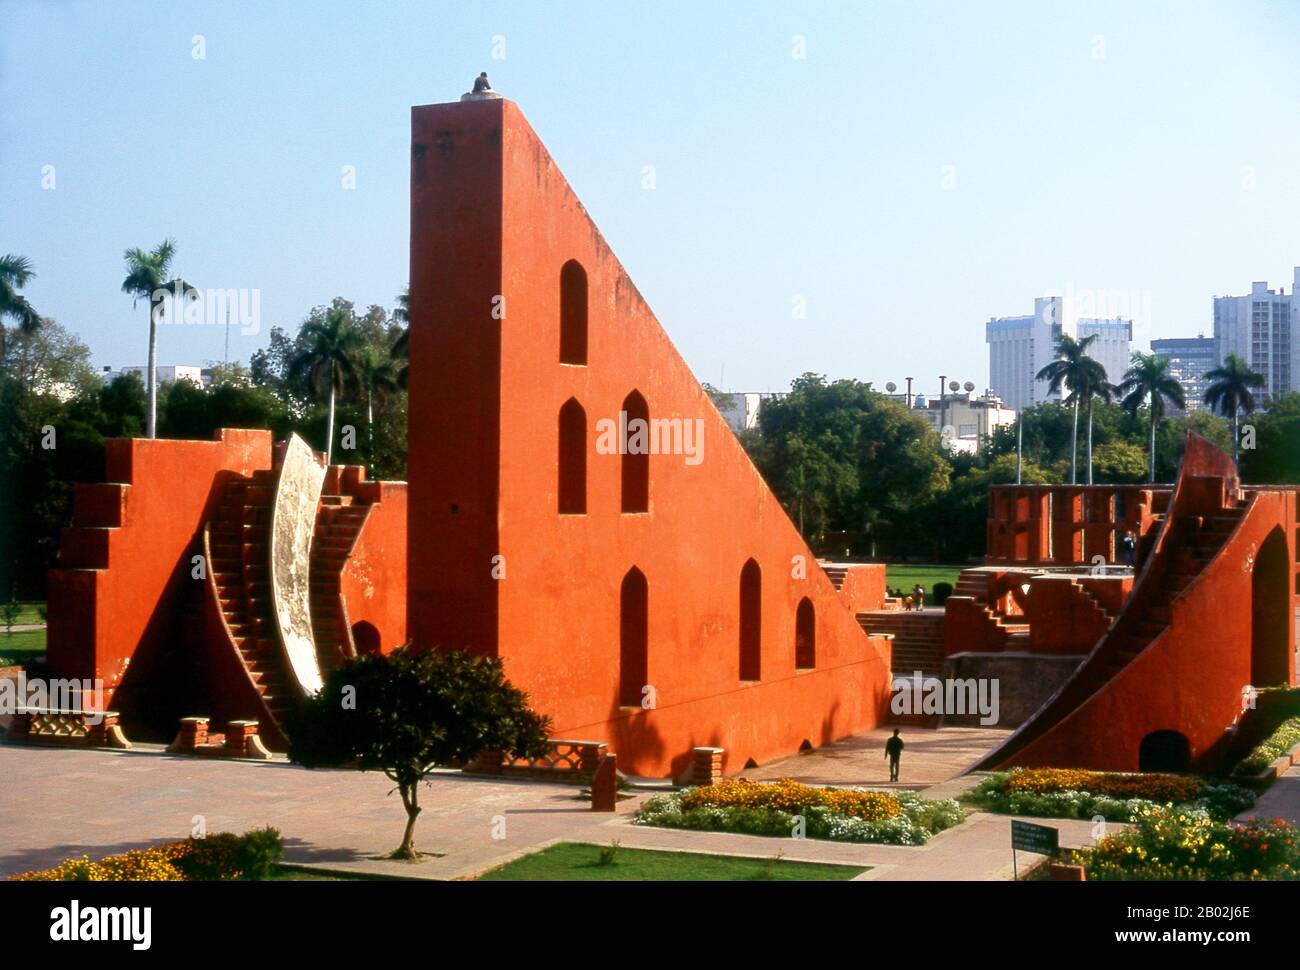 Il Jantar Mantar è una collezione di strumenti astronomici architettonici, costruito nel 1724 da Maharaja Sawai Jai Singh che era un re Rajput. L'osservatorio è costituito da tredici principali dispositivi geometrici per misurare il tempo, predire eclissi, tracciare la posizione delle stelle come orbite della terra intorno al sole, accertare le declinazioni dei pianeti, e determinare le altitudini celesti e le relative effemeridi. Delhi è detto essere il luogo di Indraprashta, capitale dei Pandavas dell'epico indiano Mahabharata. Gli scavi hanno portato alla luce frammenti di ceramica dipinta risalente a circa 1000 a.C., tho Foto Stock